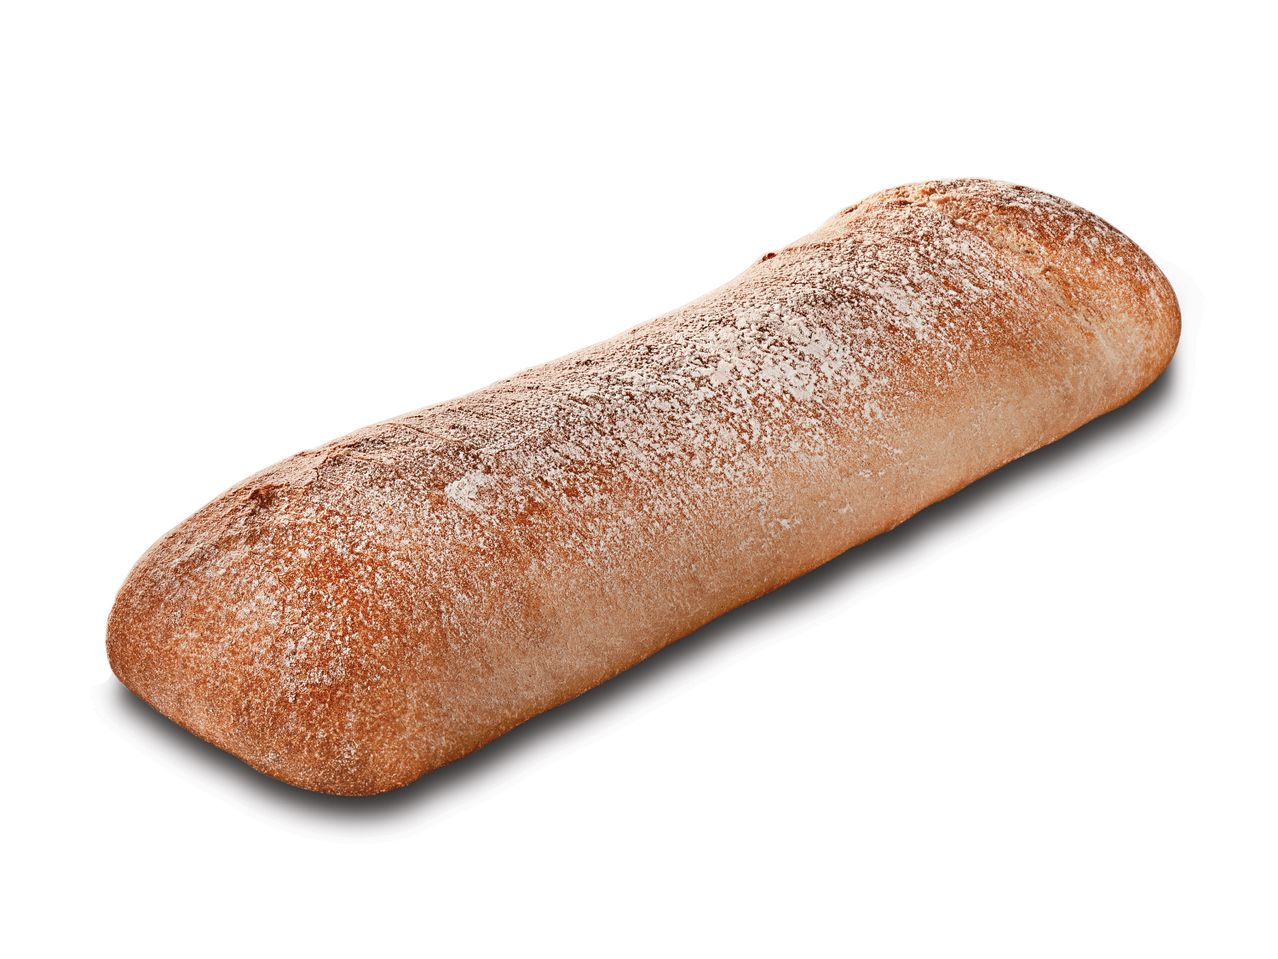 Go to full screen view: Ciabattone Bread - Image 1